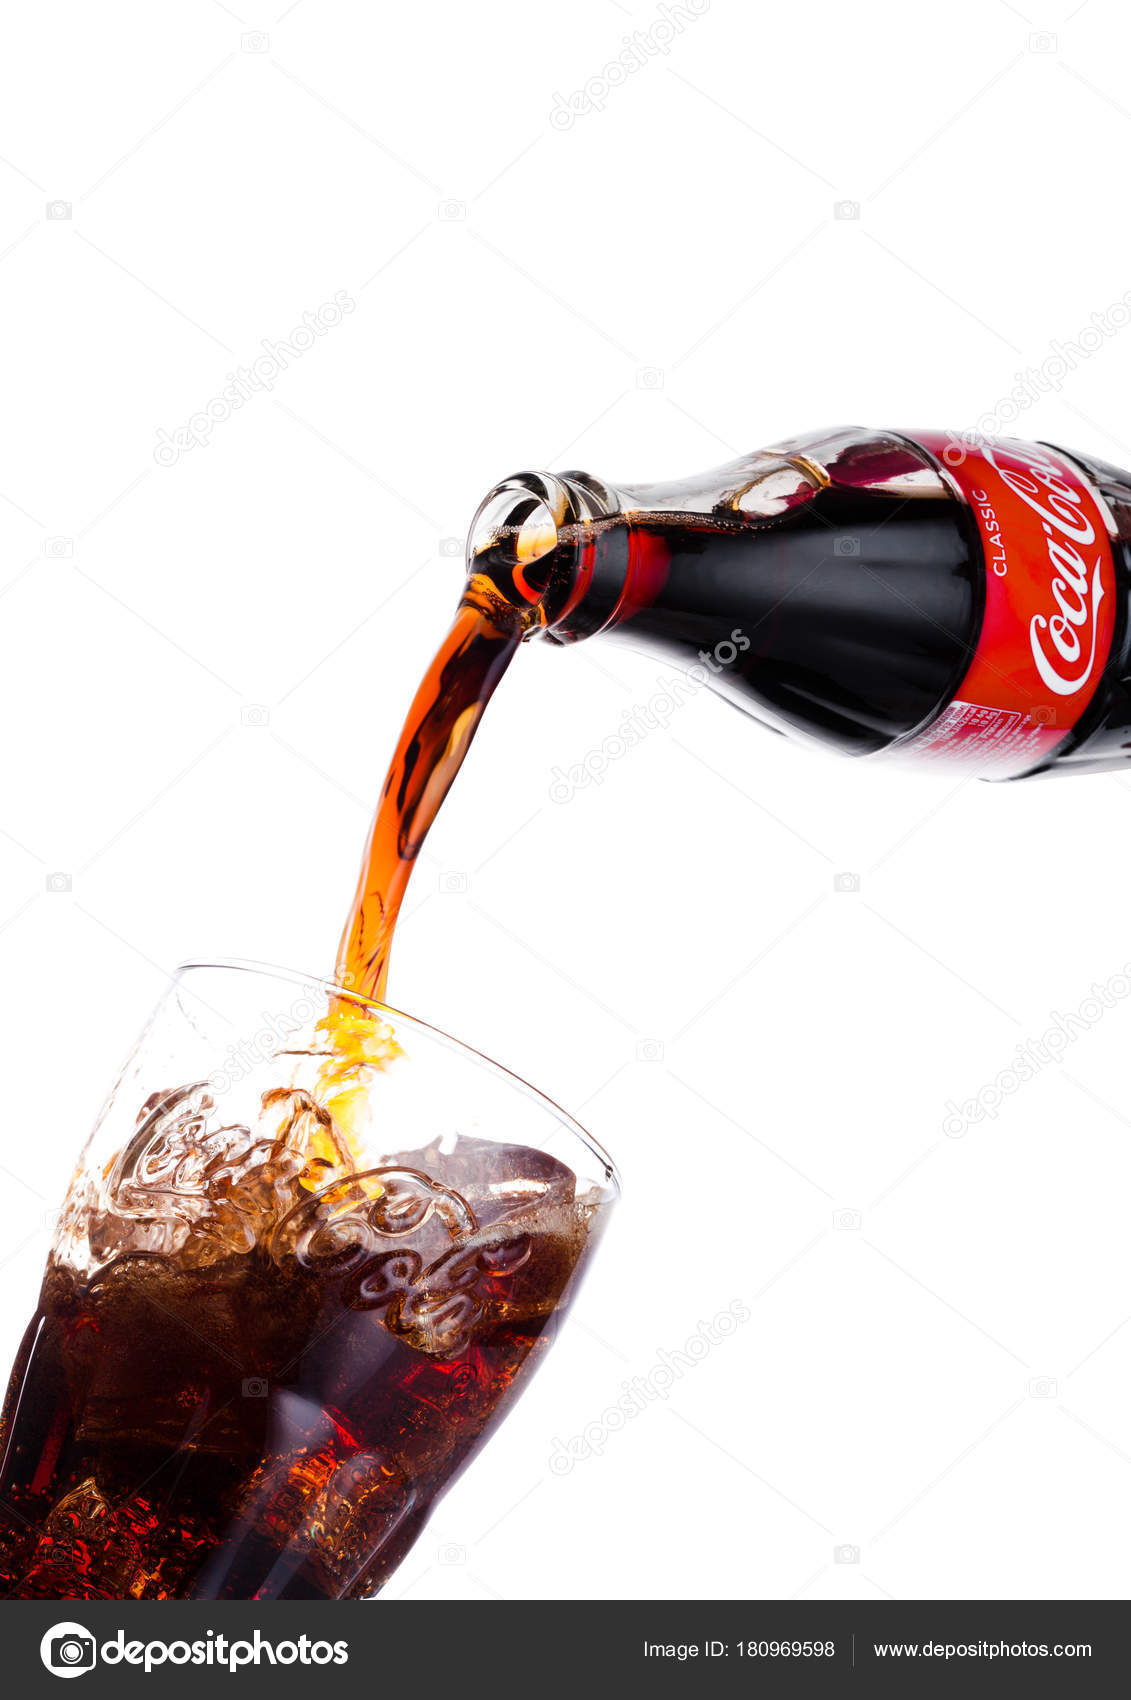 コカ コーラ写真素材 ロイヤリティフリーコカ コーラ画像 Depositphotos